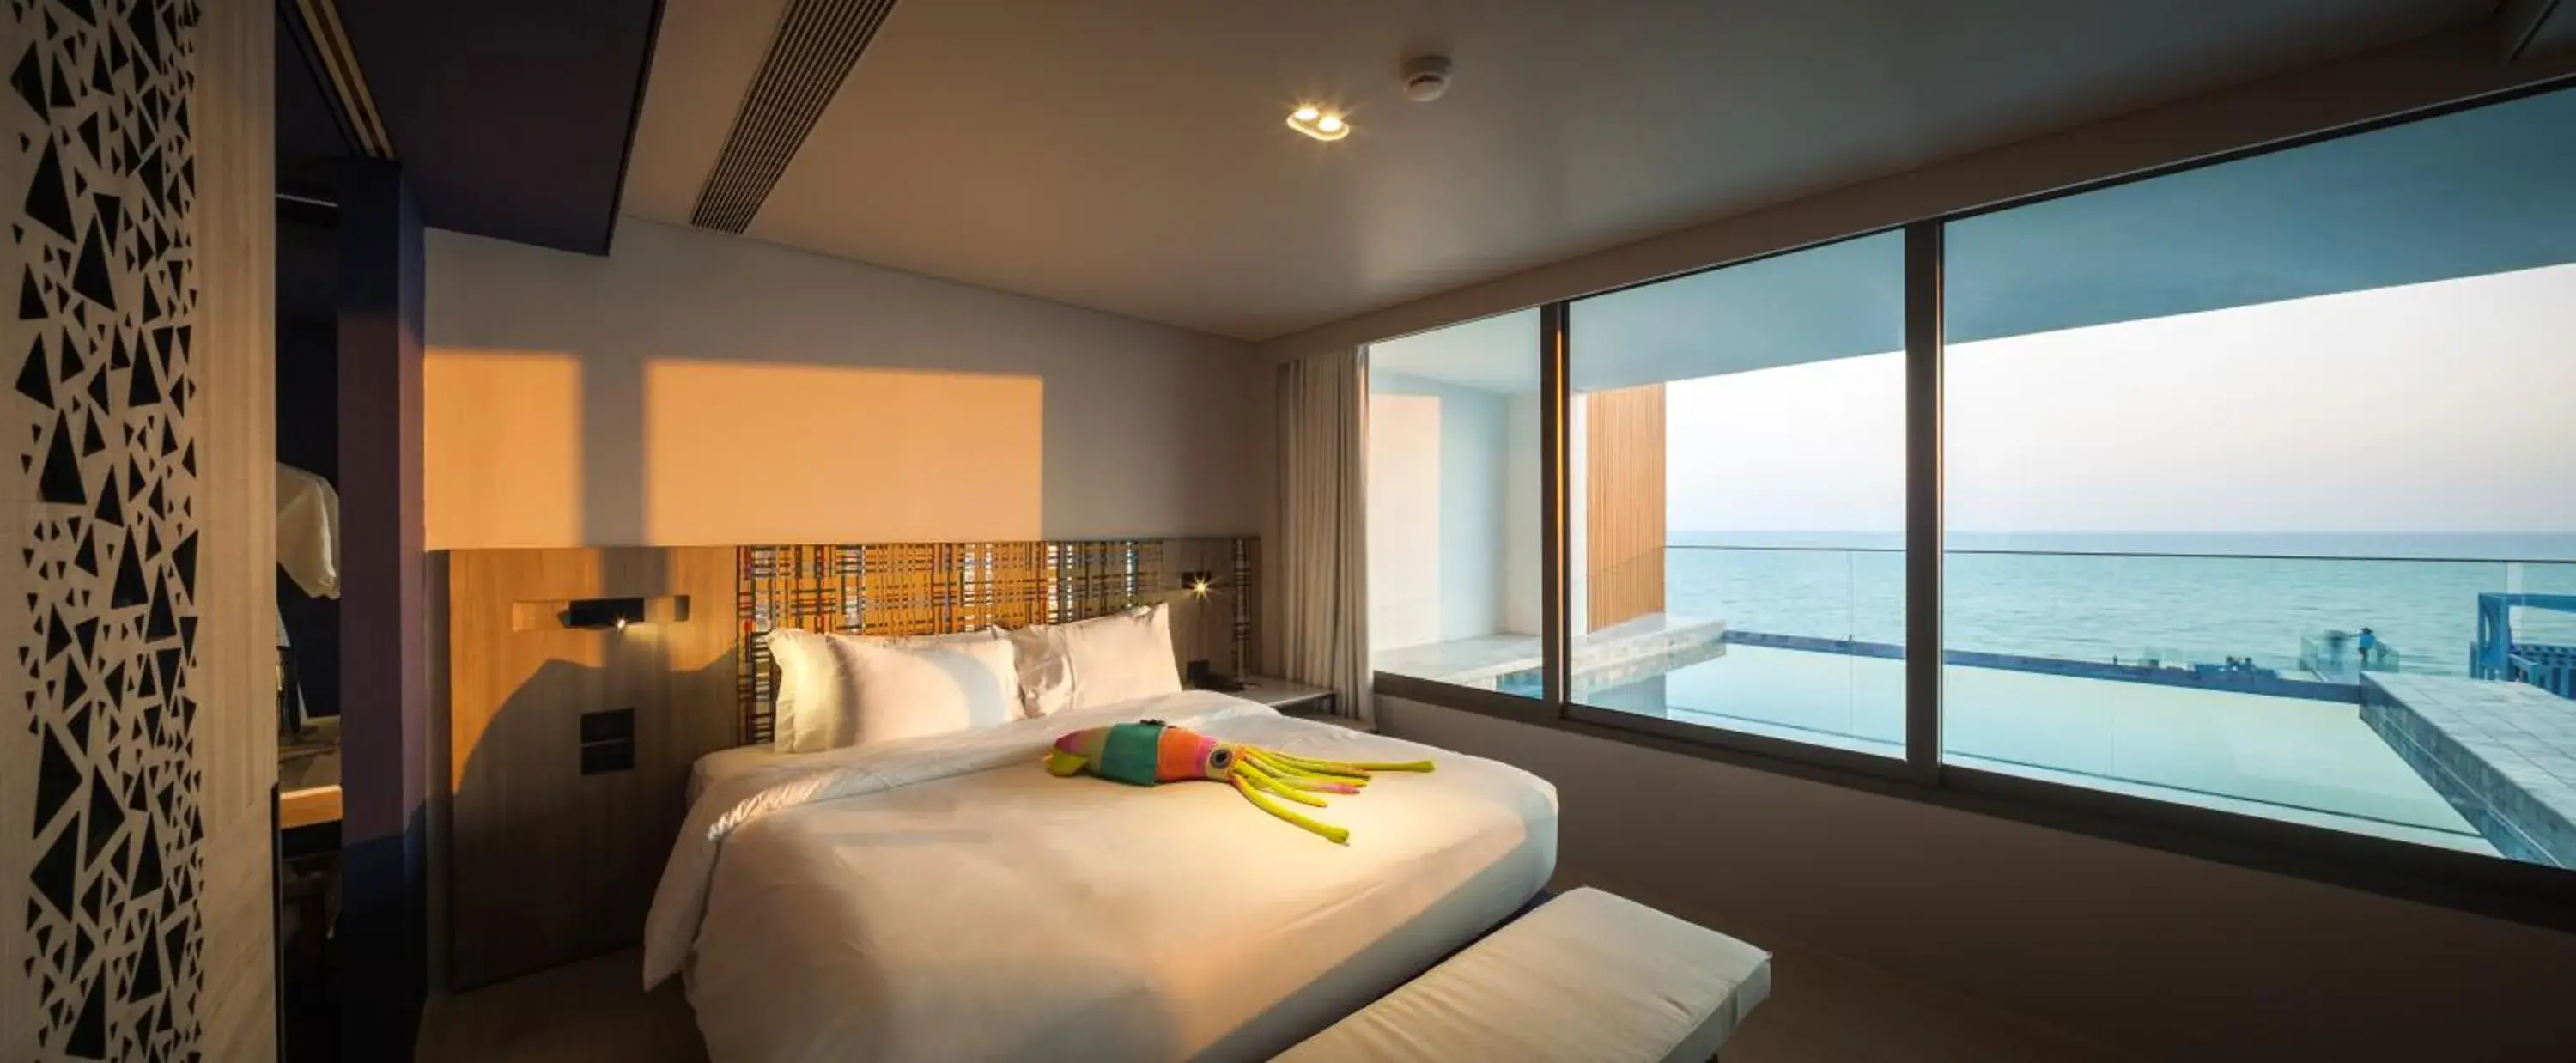 Bedroom in Veranda Resort Pattaya - MGallery by Sofitel